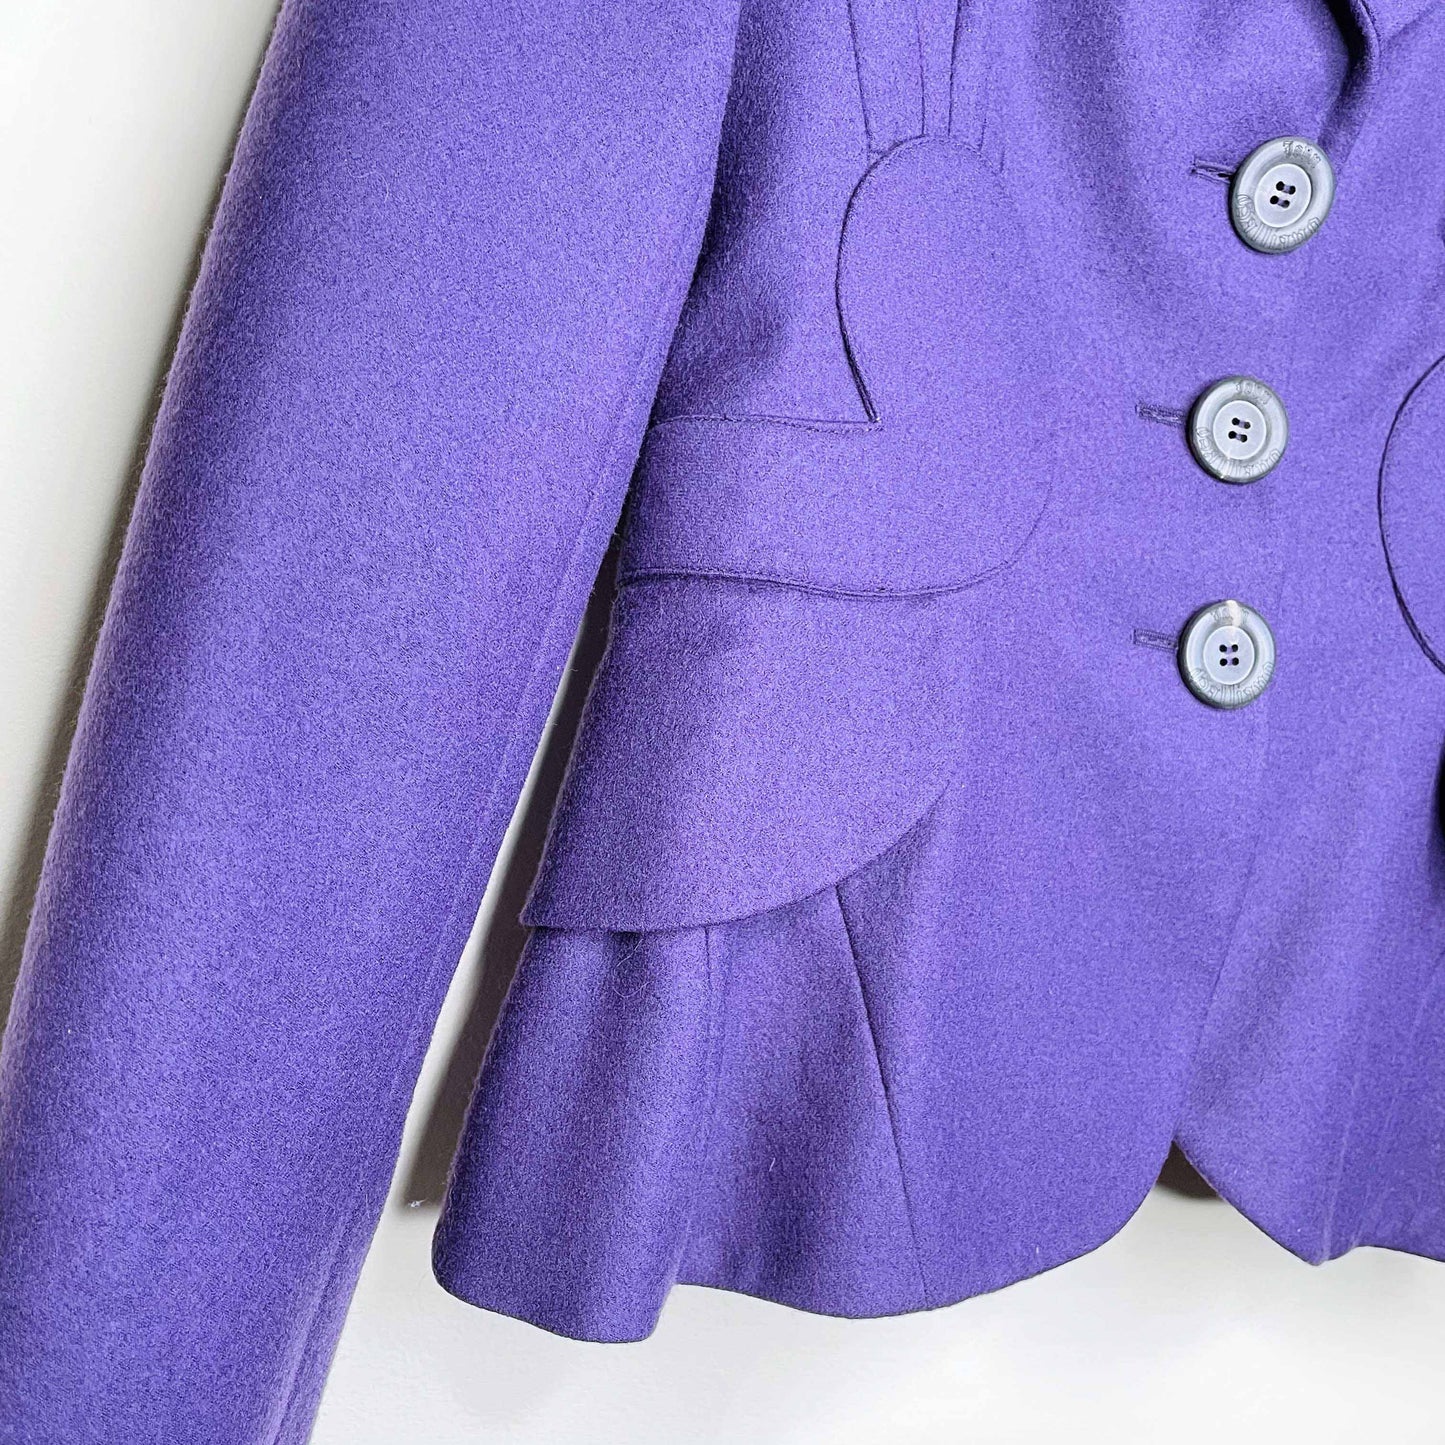 john galliano 00's purple wool skirt suit - size 6